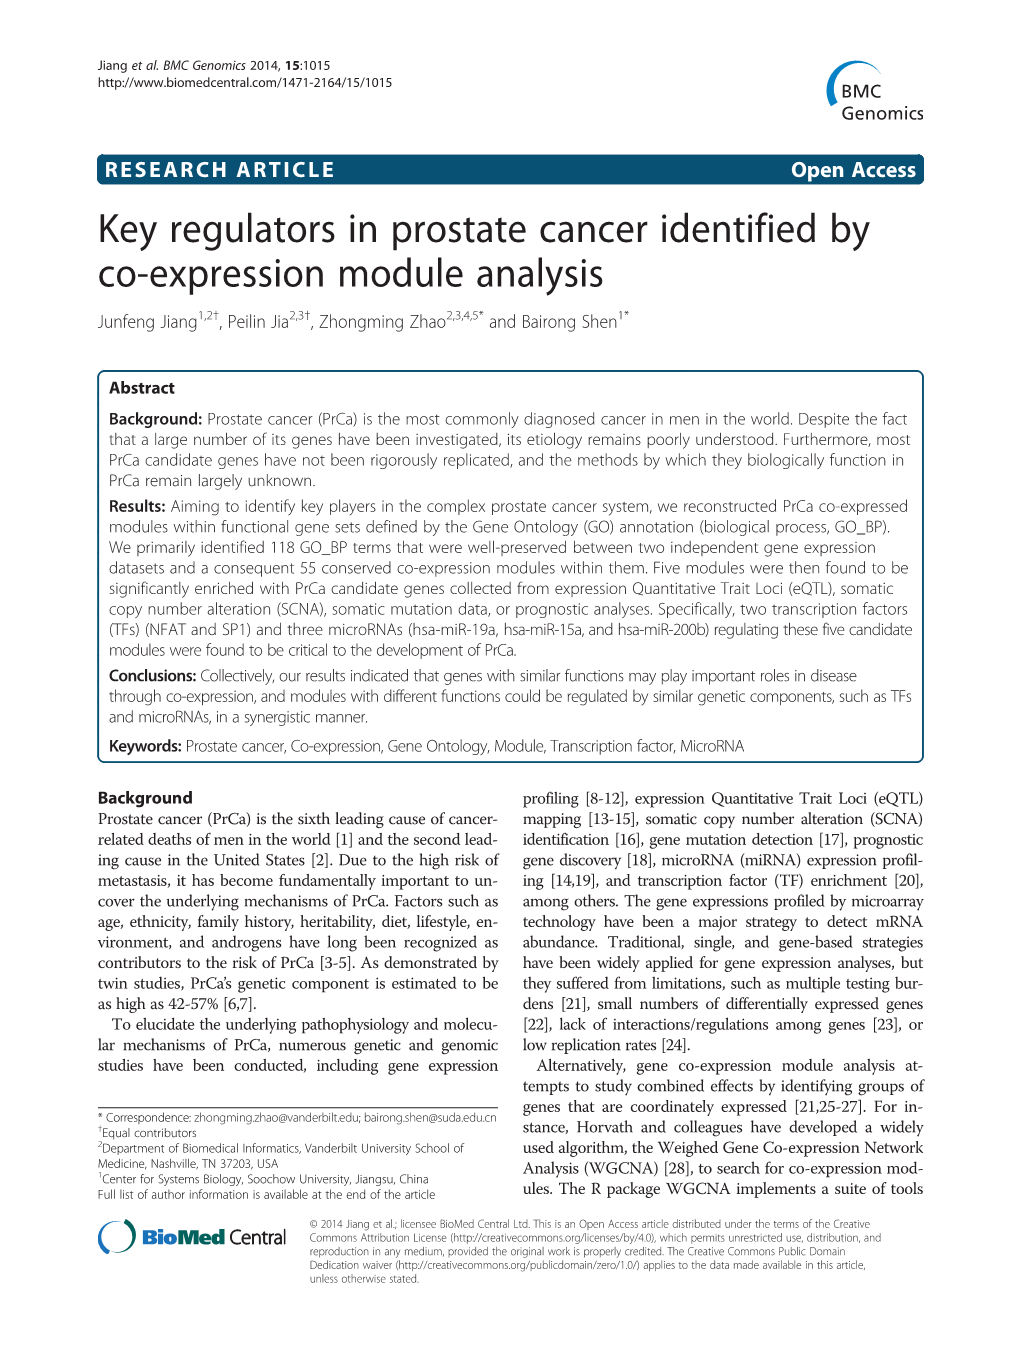 Key Regulators in Prostate Cancer Identified by Co-Expression Module Analysis Junfeng Jiang1,2†, Peilin Jia2,3†, Zhongming Zhao2,3,4,5* and Bairong Shen1*